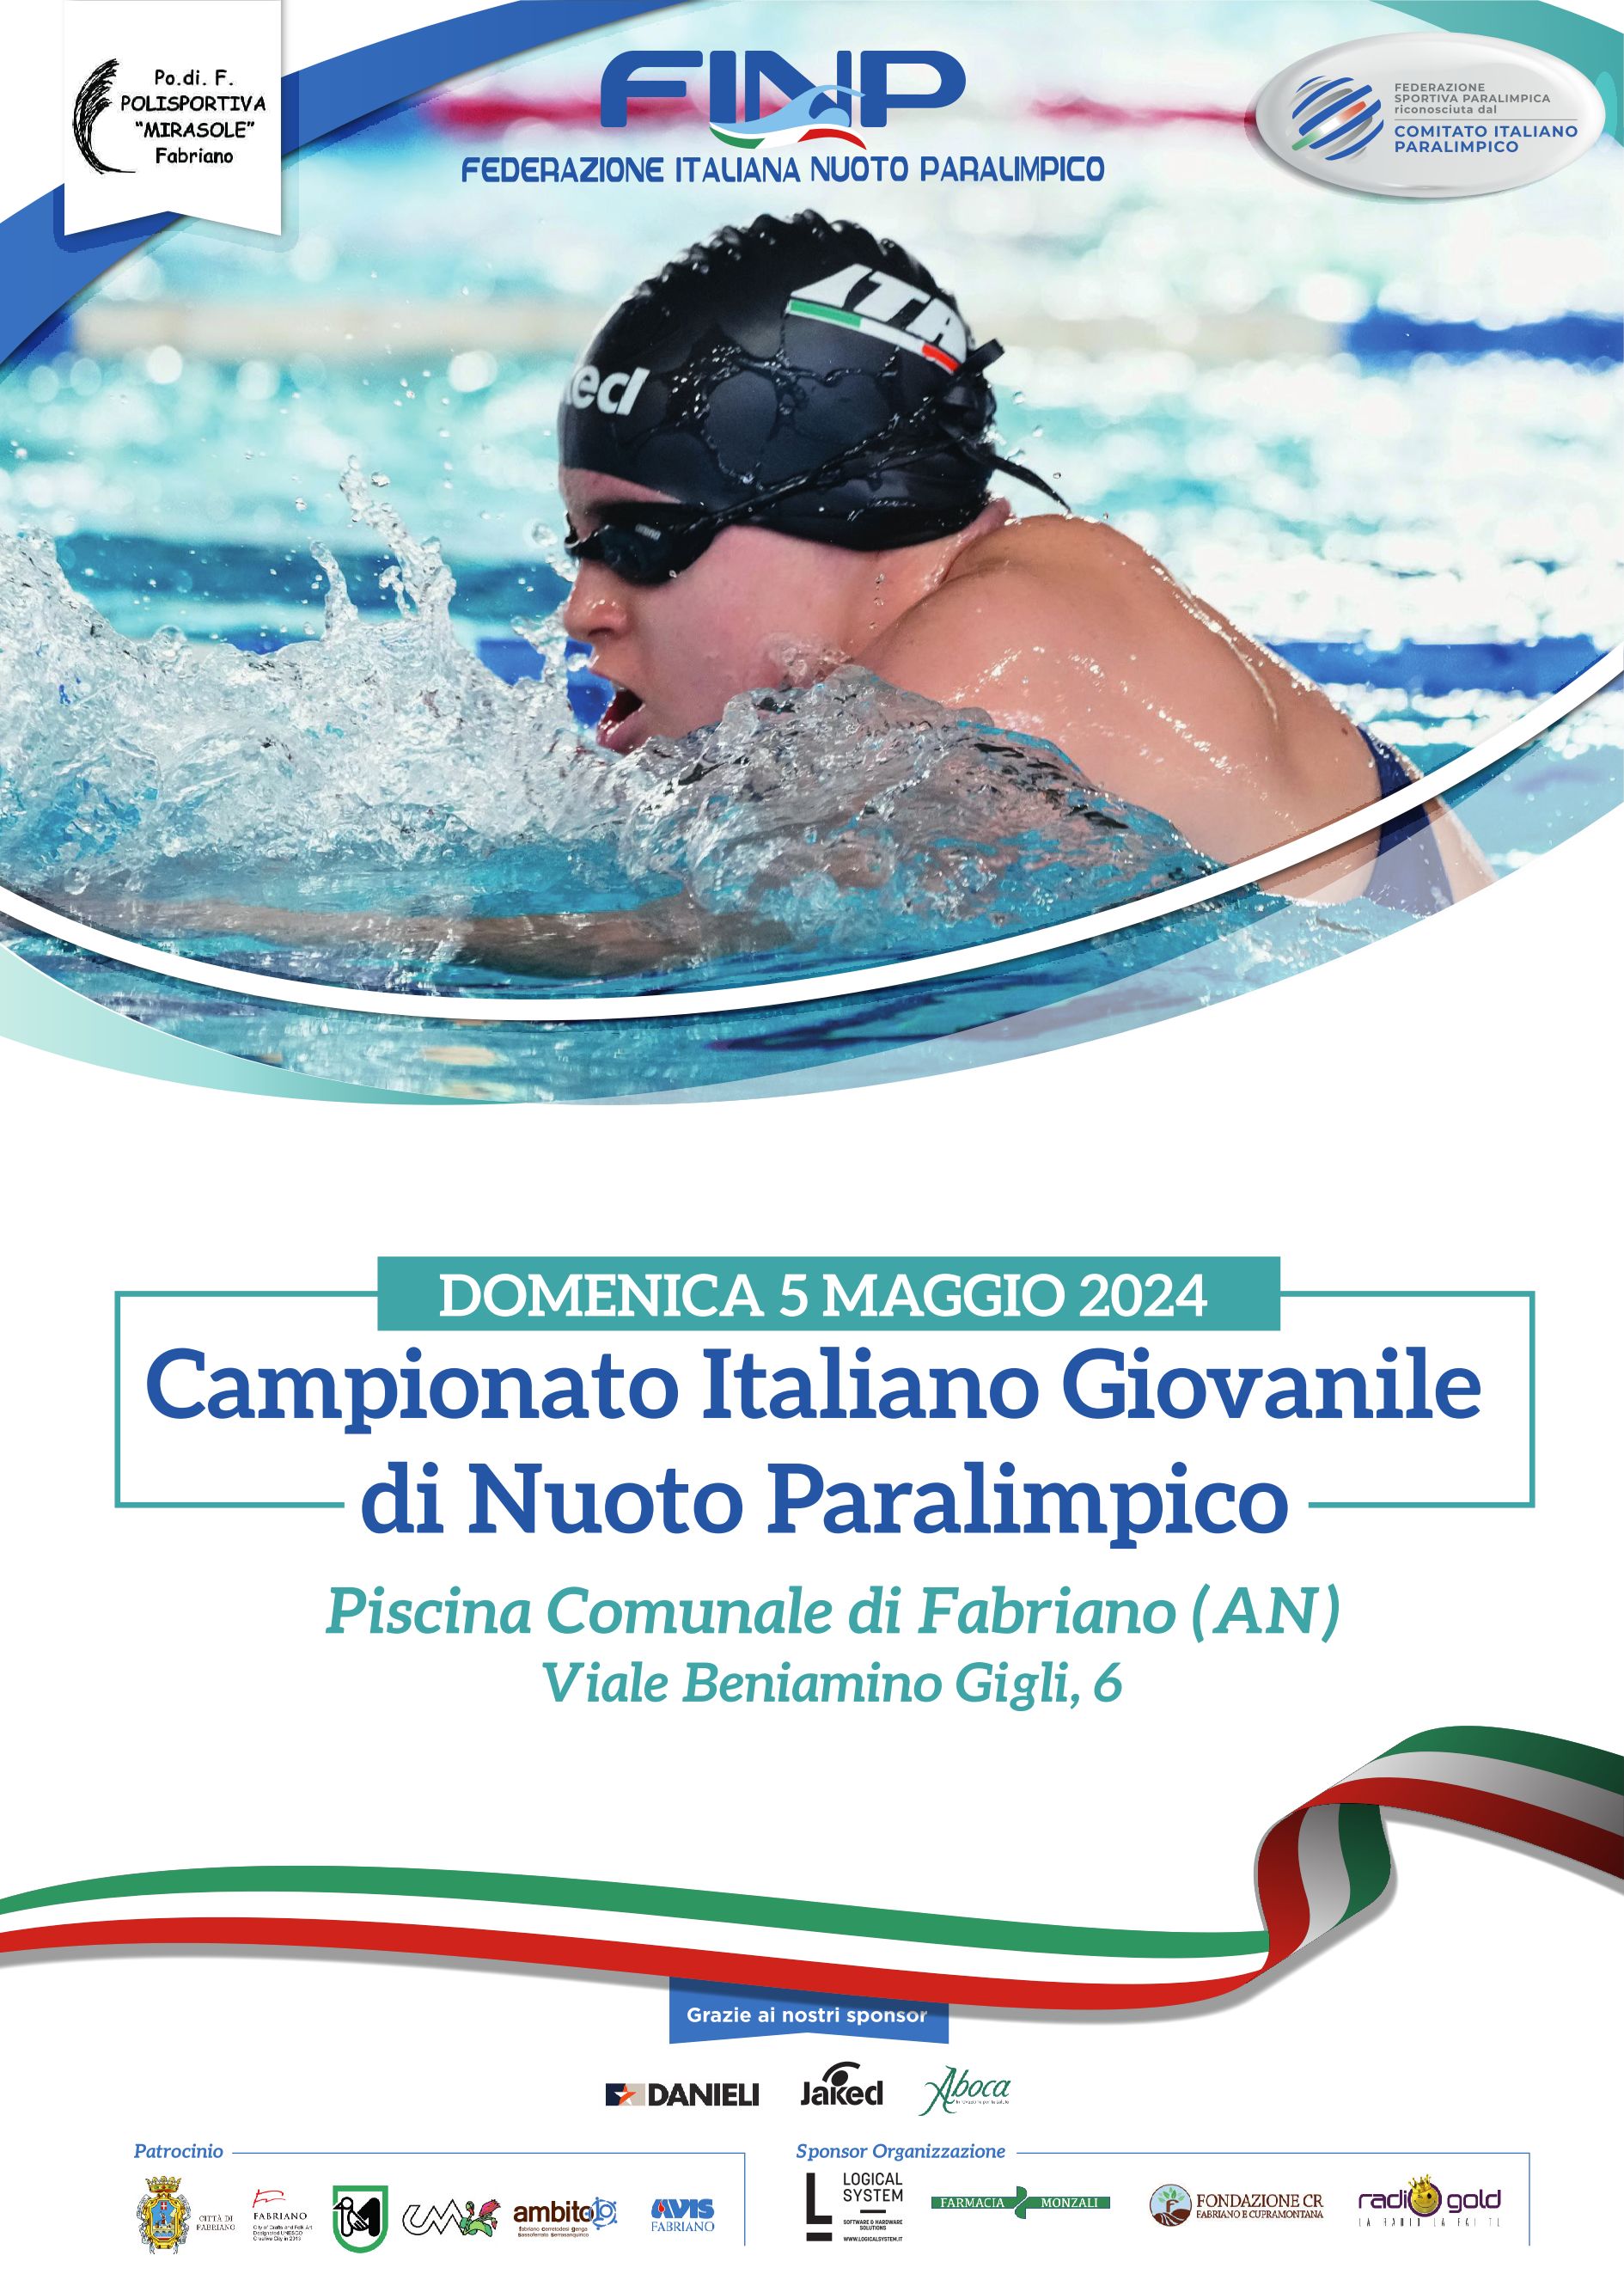 Campionato Italiano Giovanile di Nuoto Paralimpico - Domenica 5 maggio